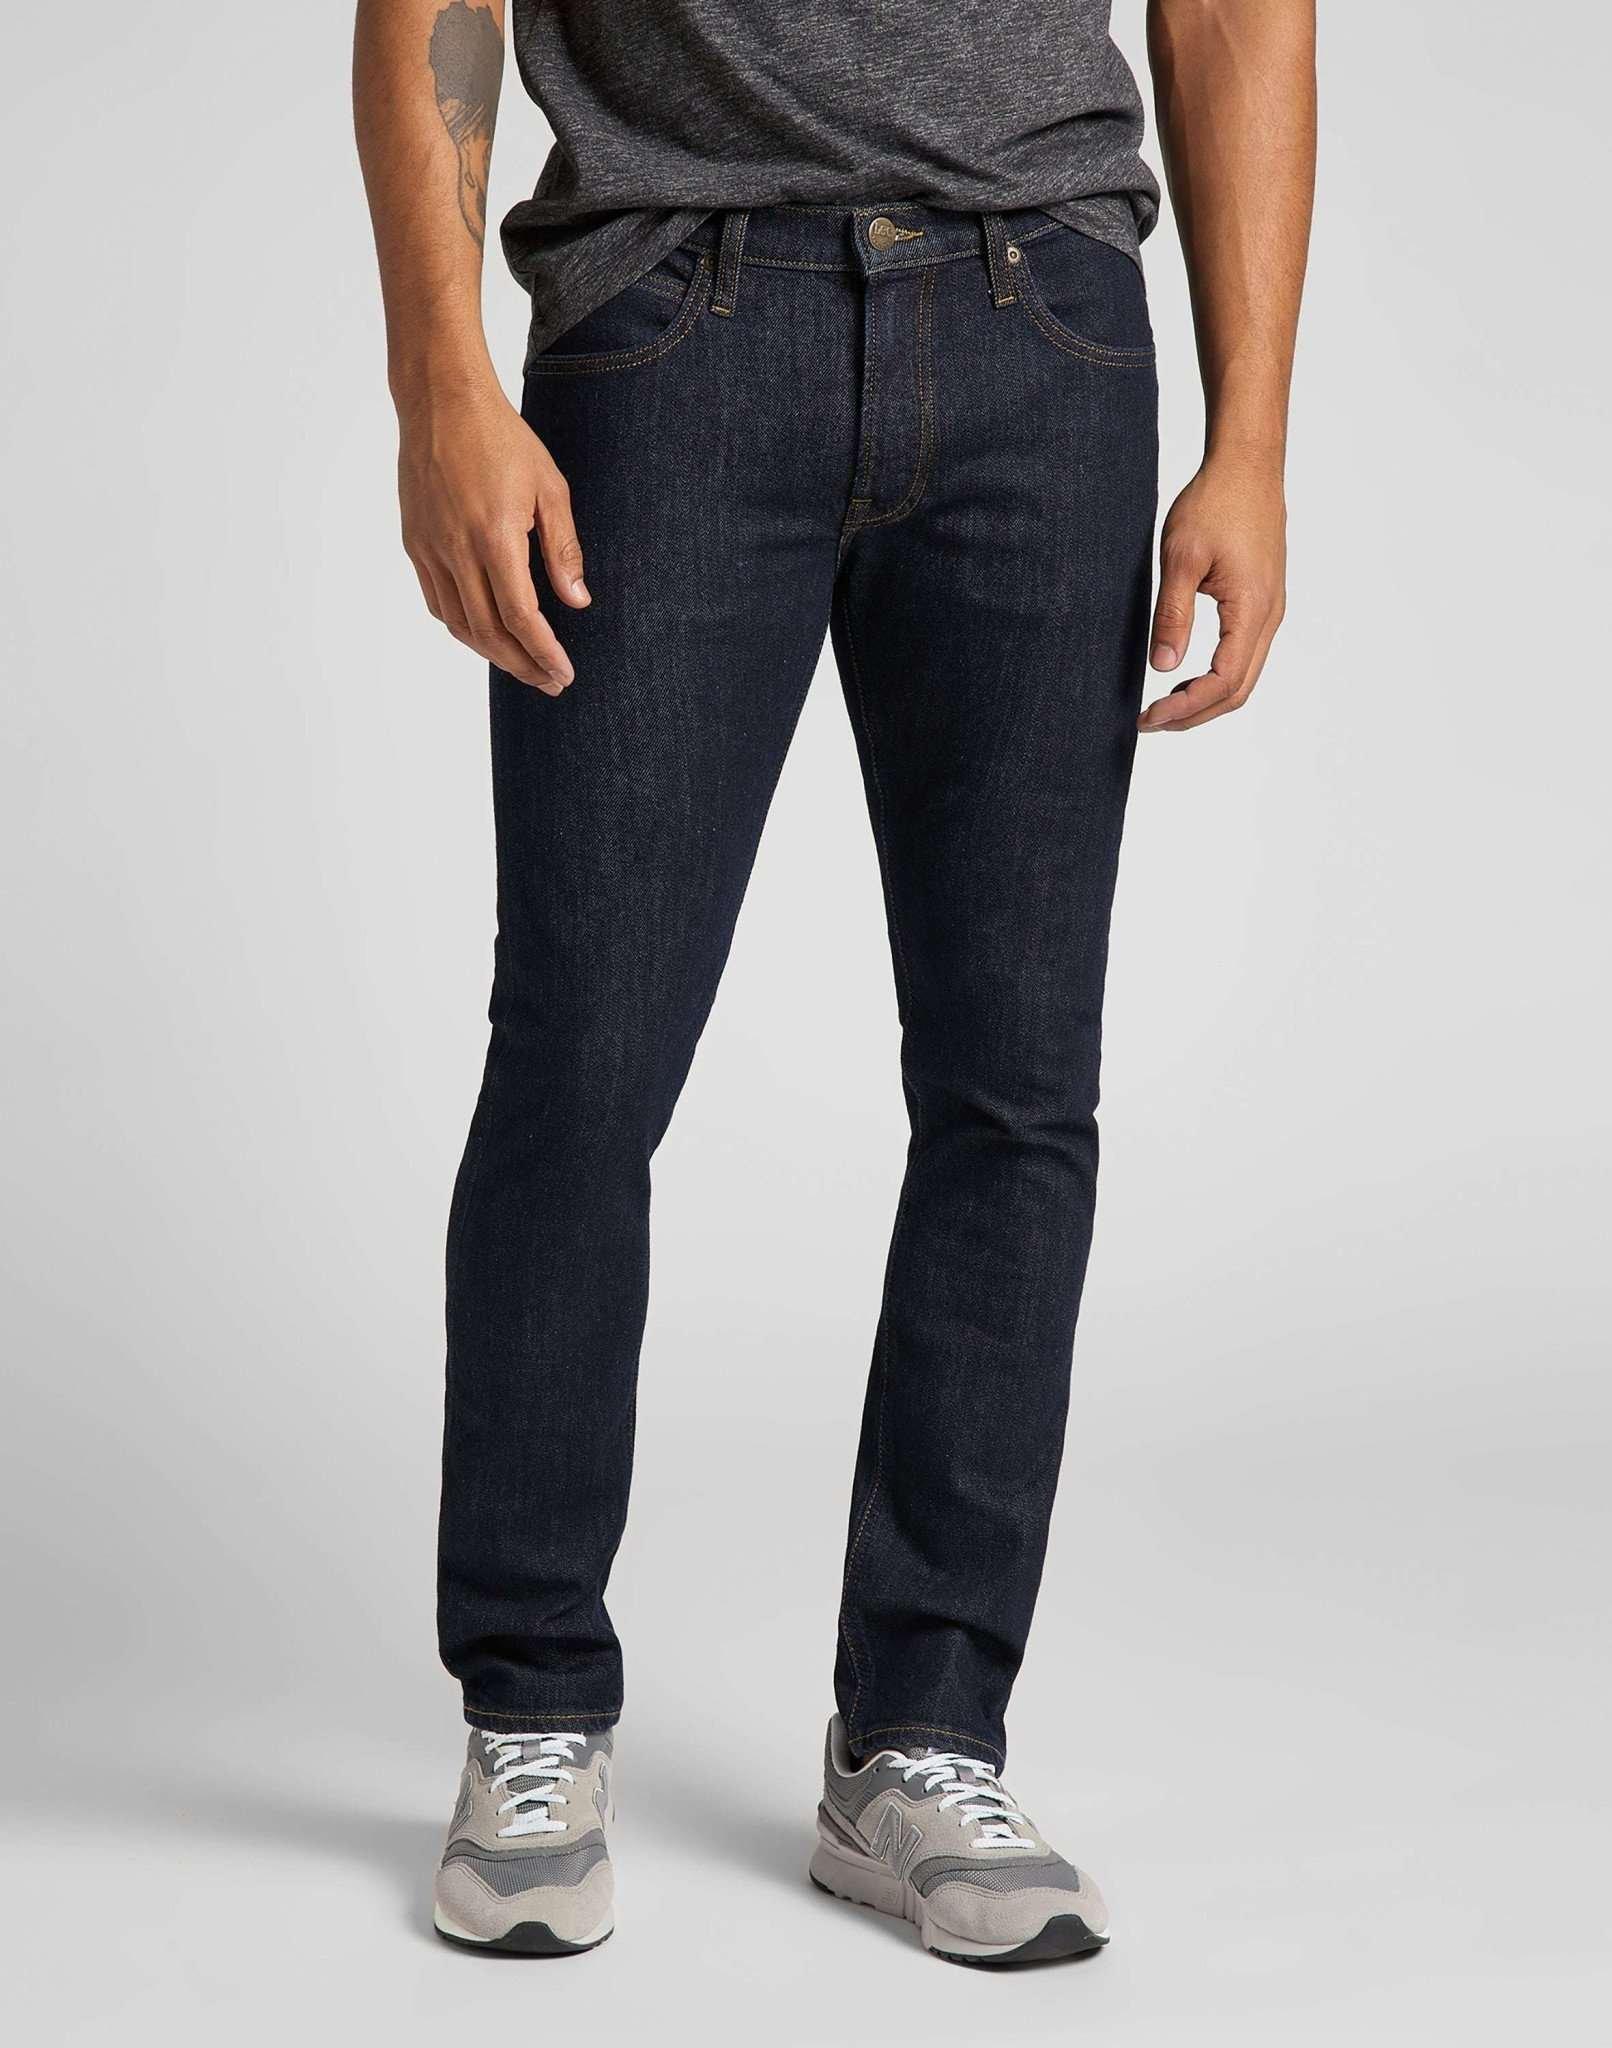 Jeans Slim Fit Luke Herren Blau L34/W30 von Lee